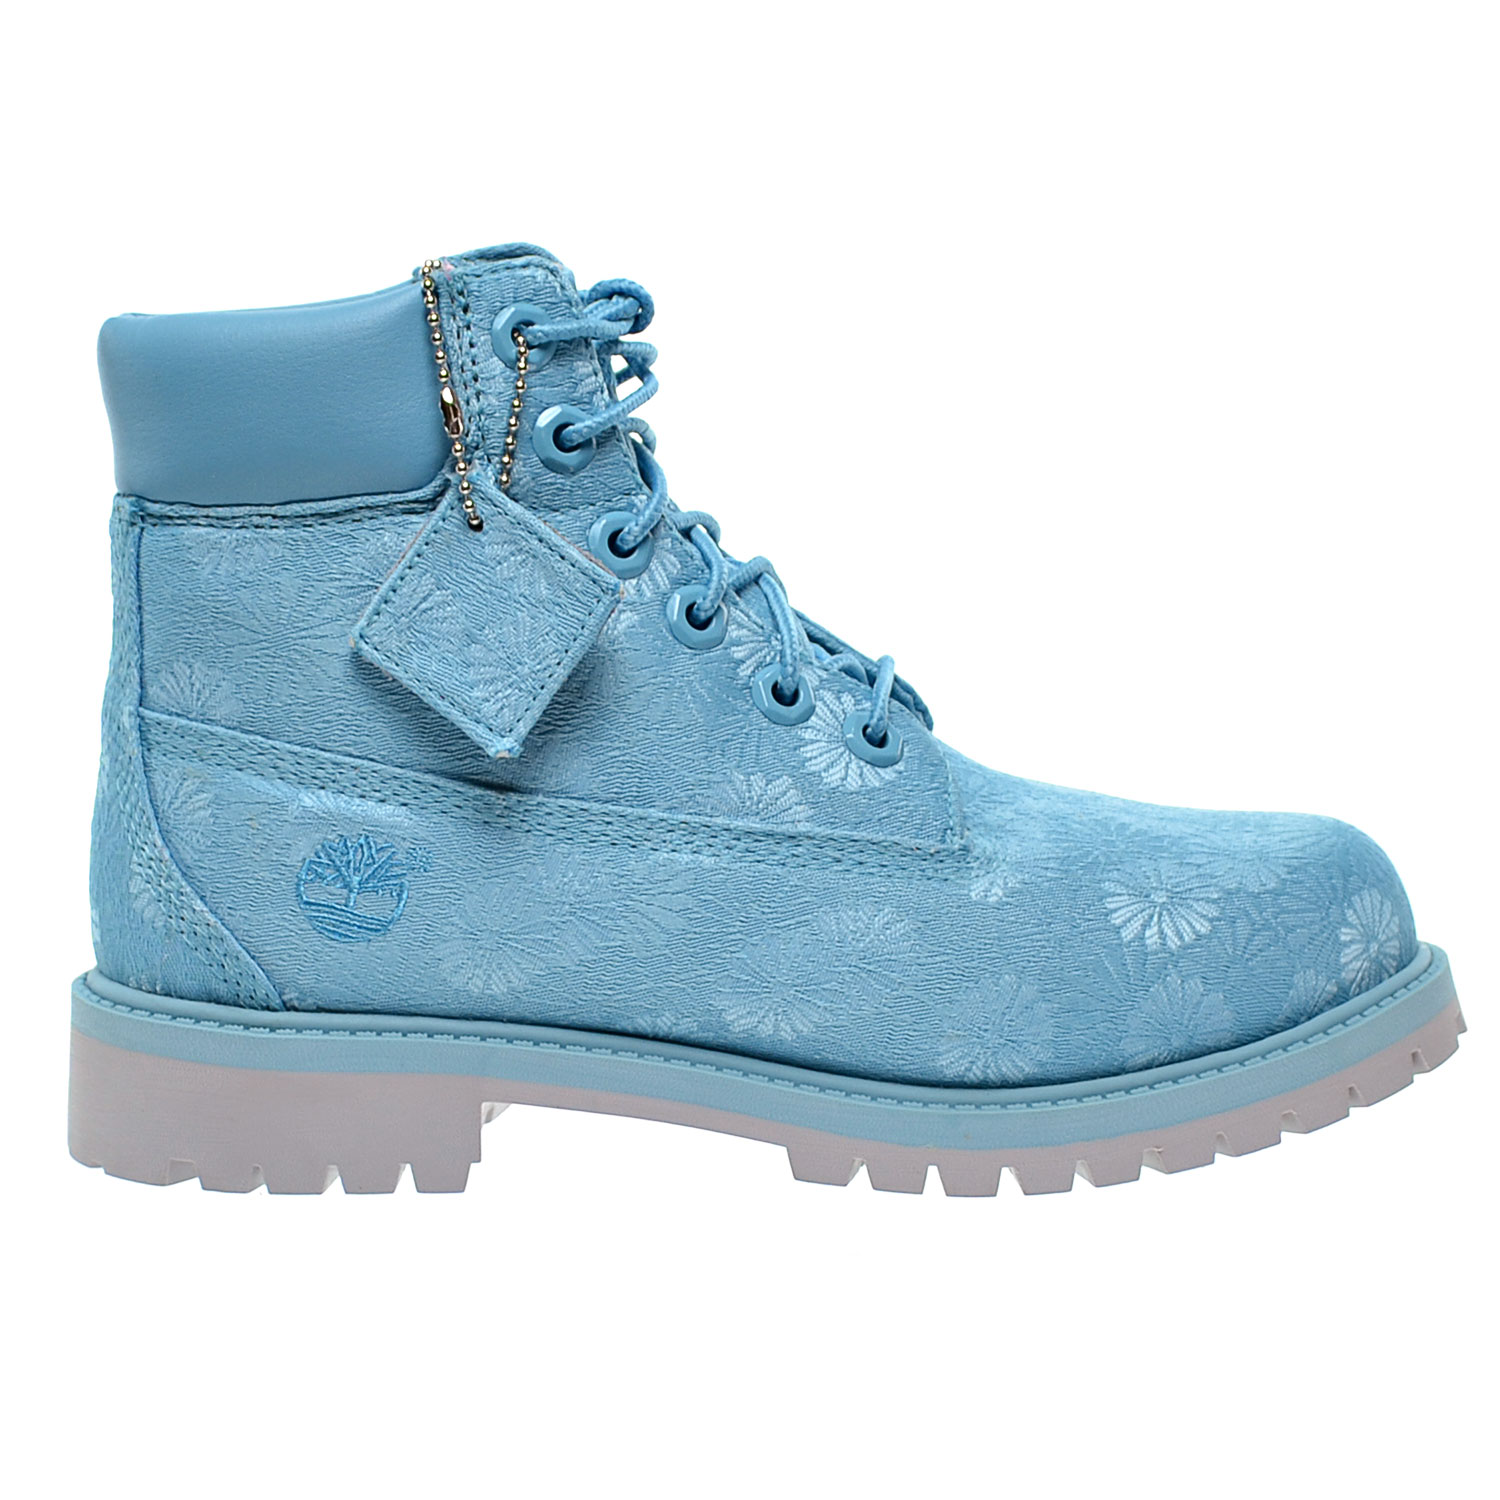 blue floral boots